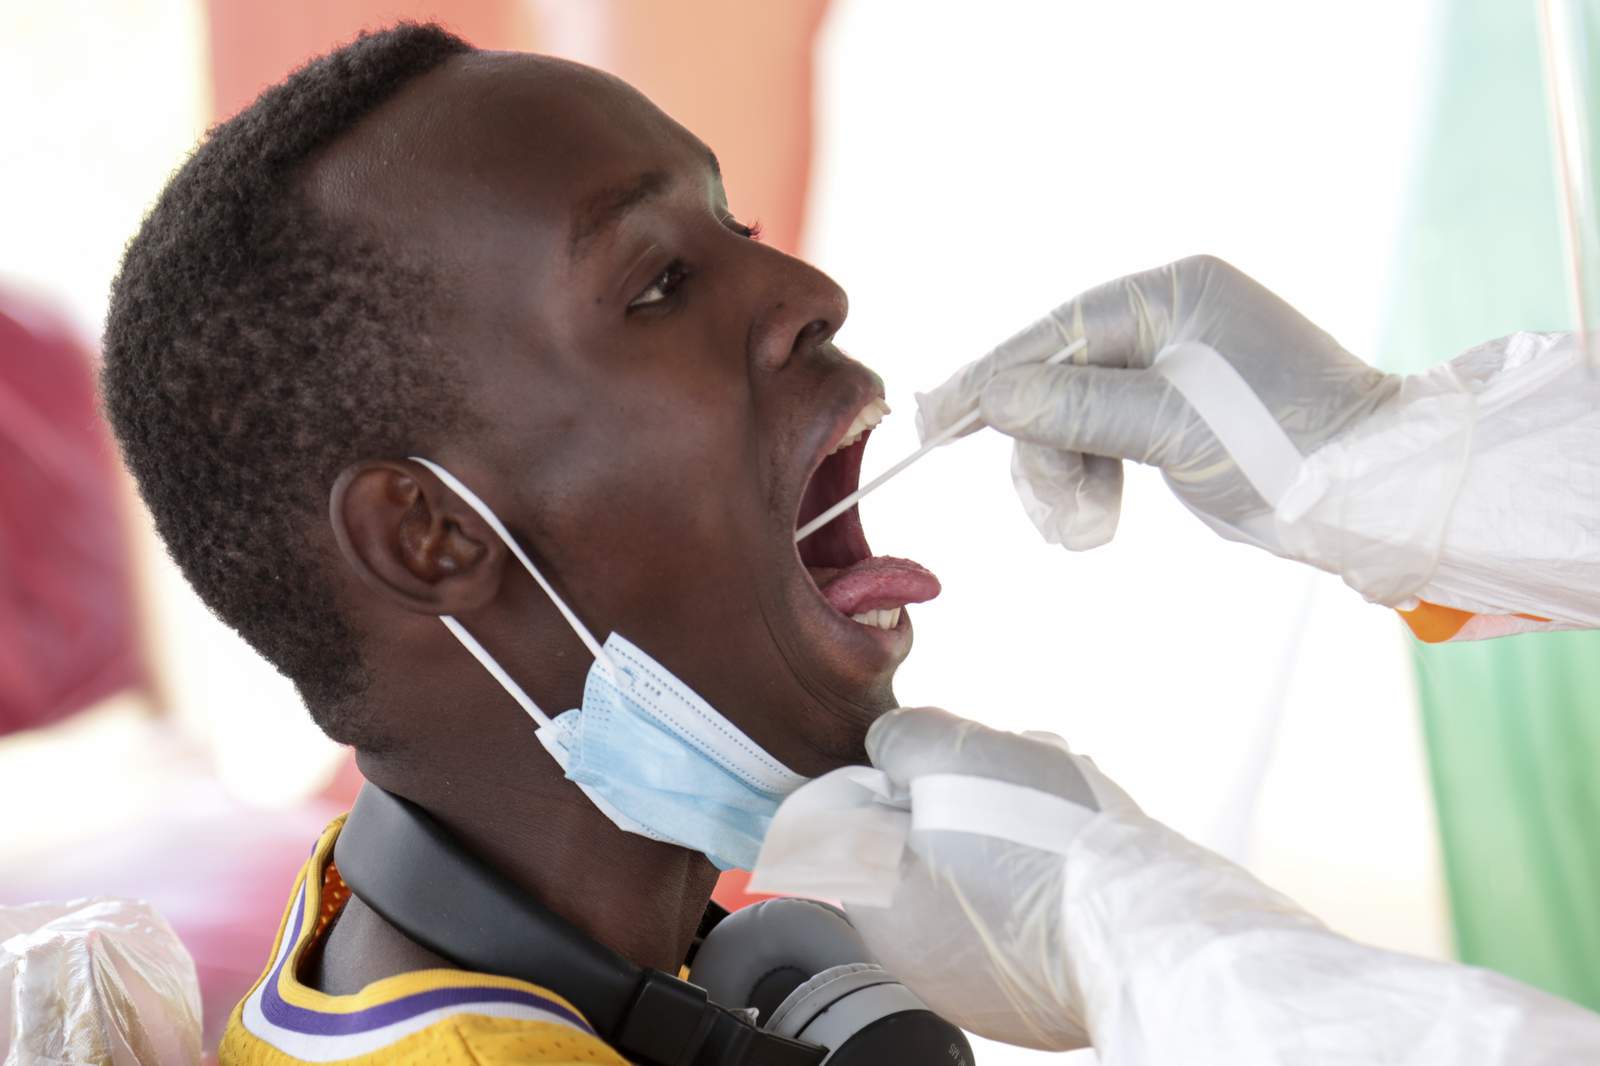 Burundi starts taking COVID-19 seriously, begins screening